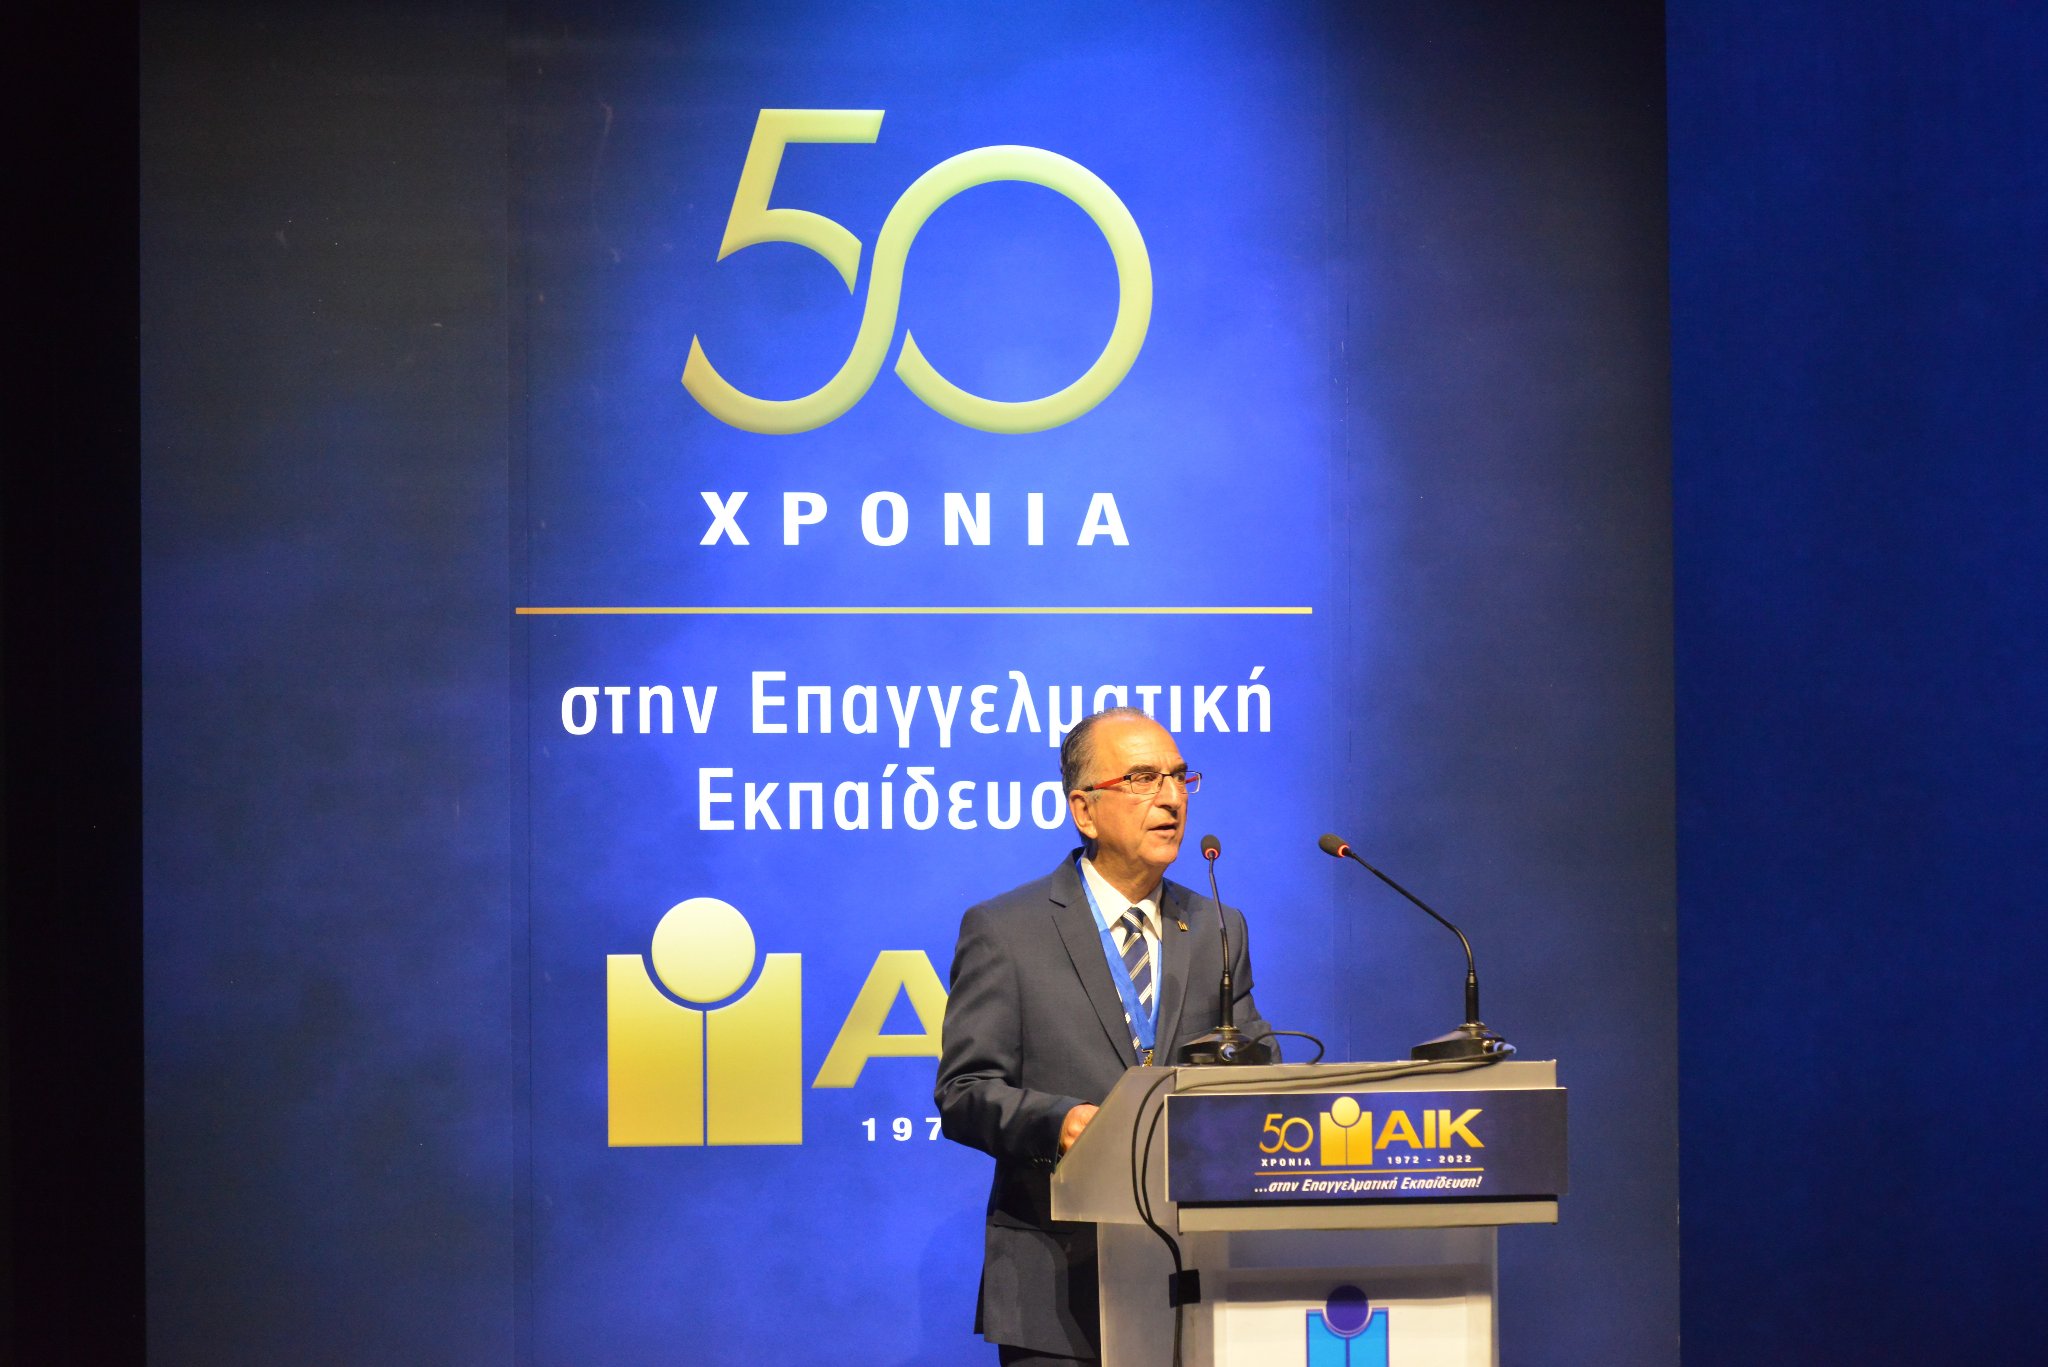 Το Ασφαλιστικό Ινστιτούτο Κύπρου γιόρτασε 50 χρόνια προσφοράς στην Επαγγελματική Εκπαίδευση (φωτογραφίες)